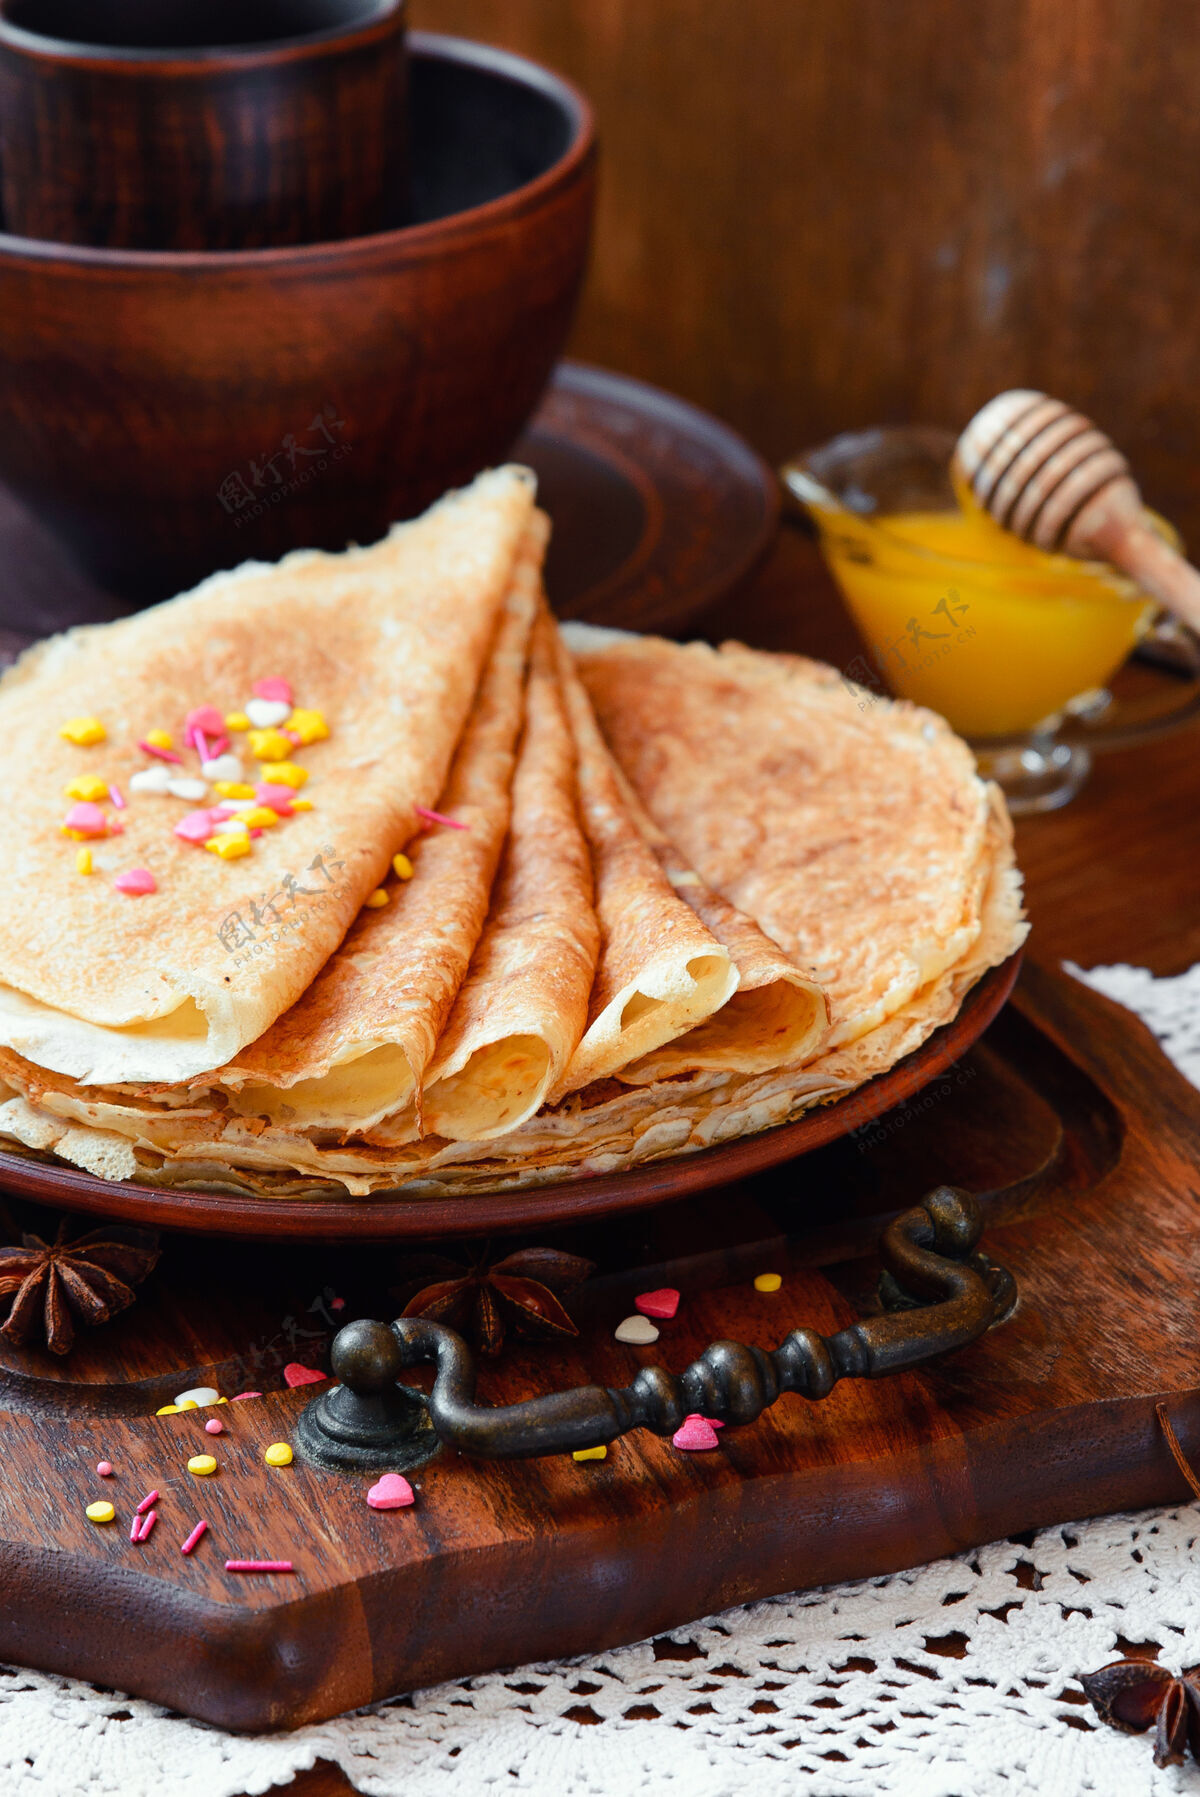 俄罗斯金煎饼 冷冻水果 装饰和蜂蜜在一个乡村风格早晨糖浆热的